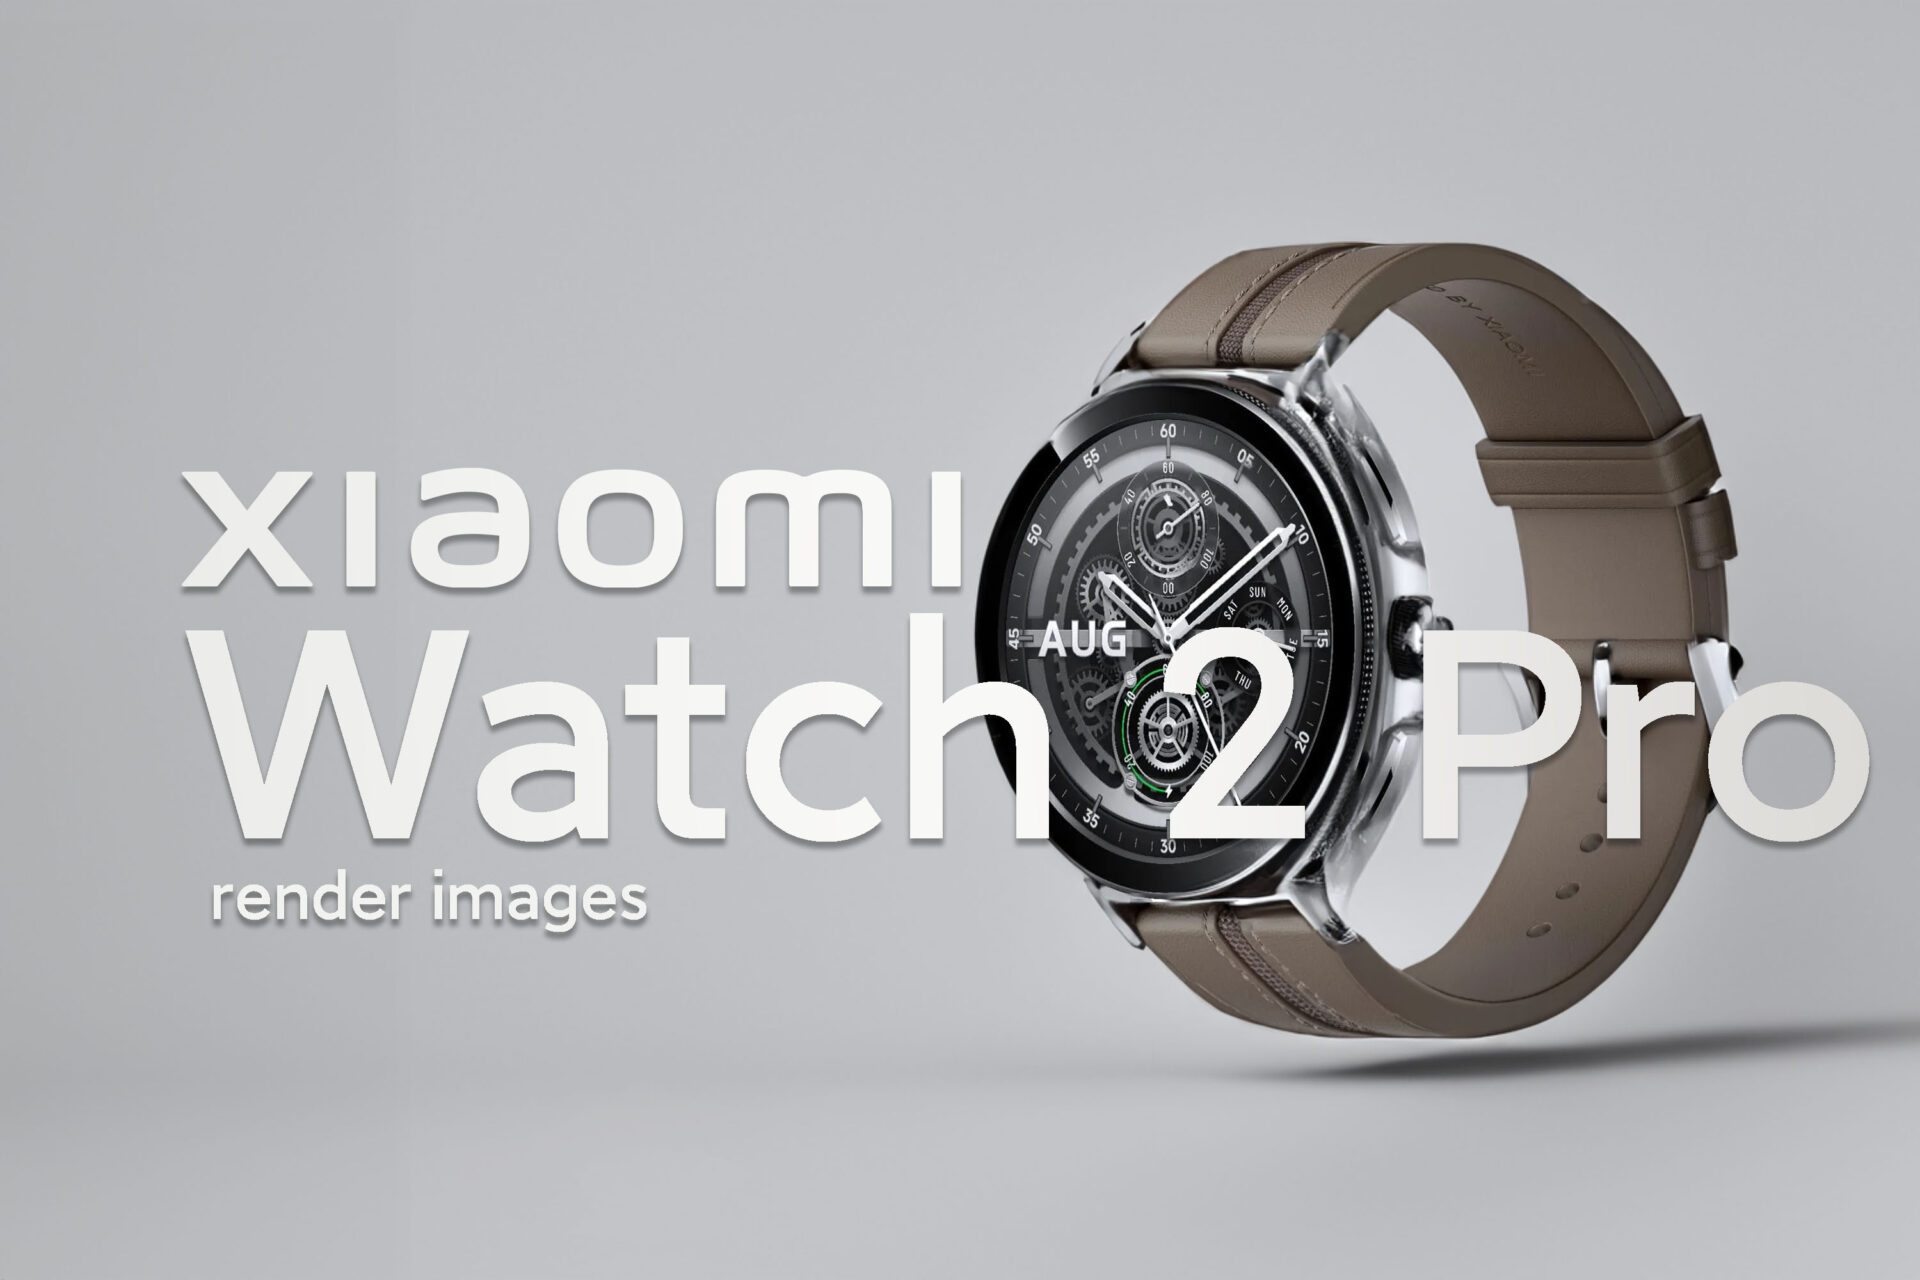 Xiaomi Watch S3-05